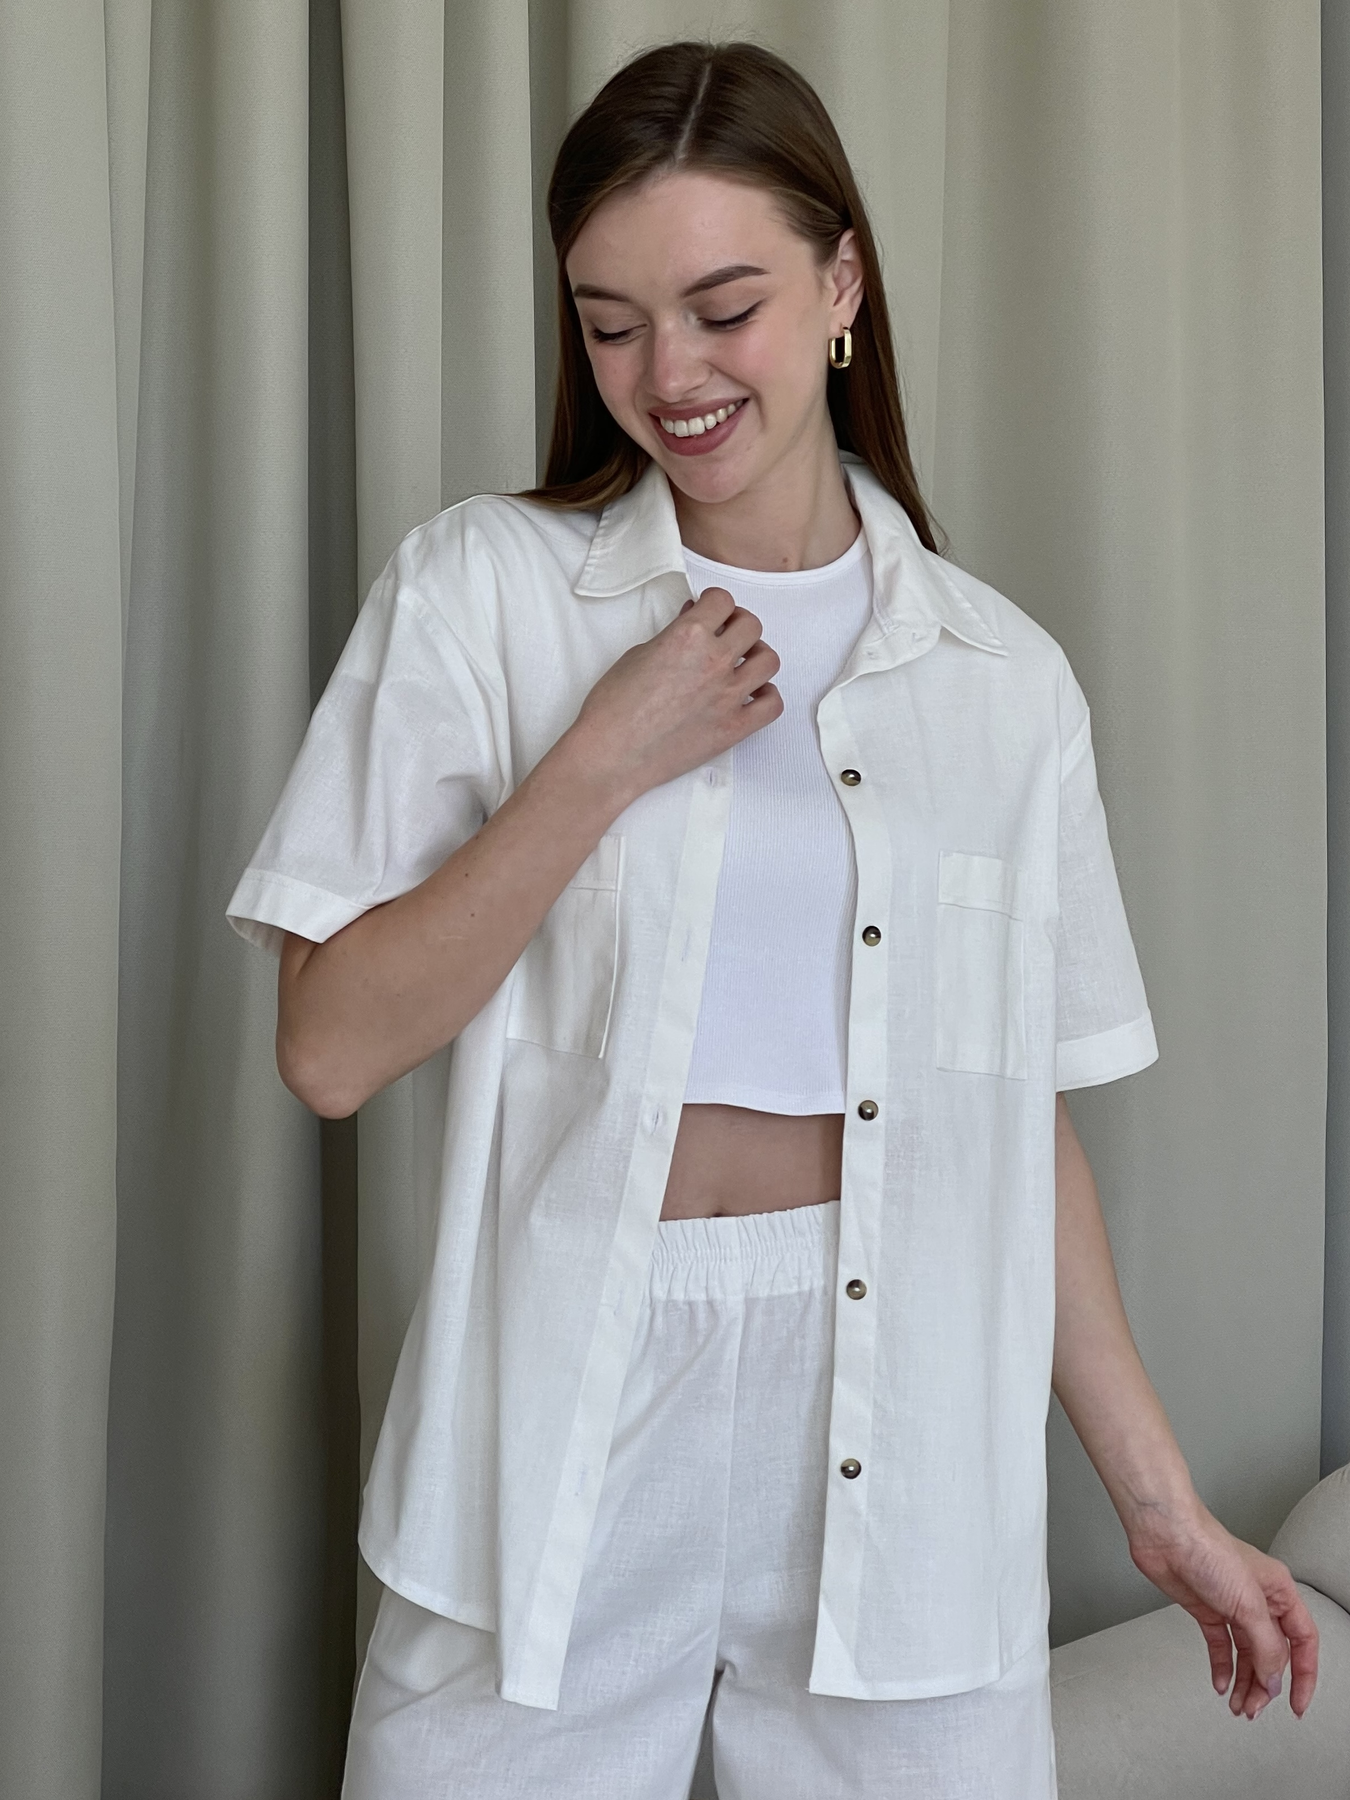 Купить Льняная рубашка с коротким рукавом белая Merlini Нино 200001202 размер 42-44 (S-M) в интернет-магазине